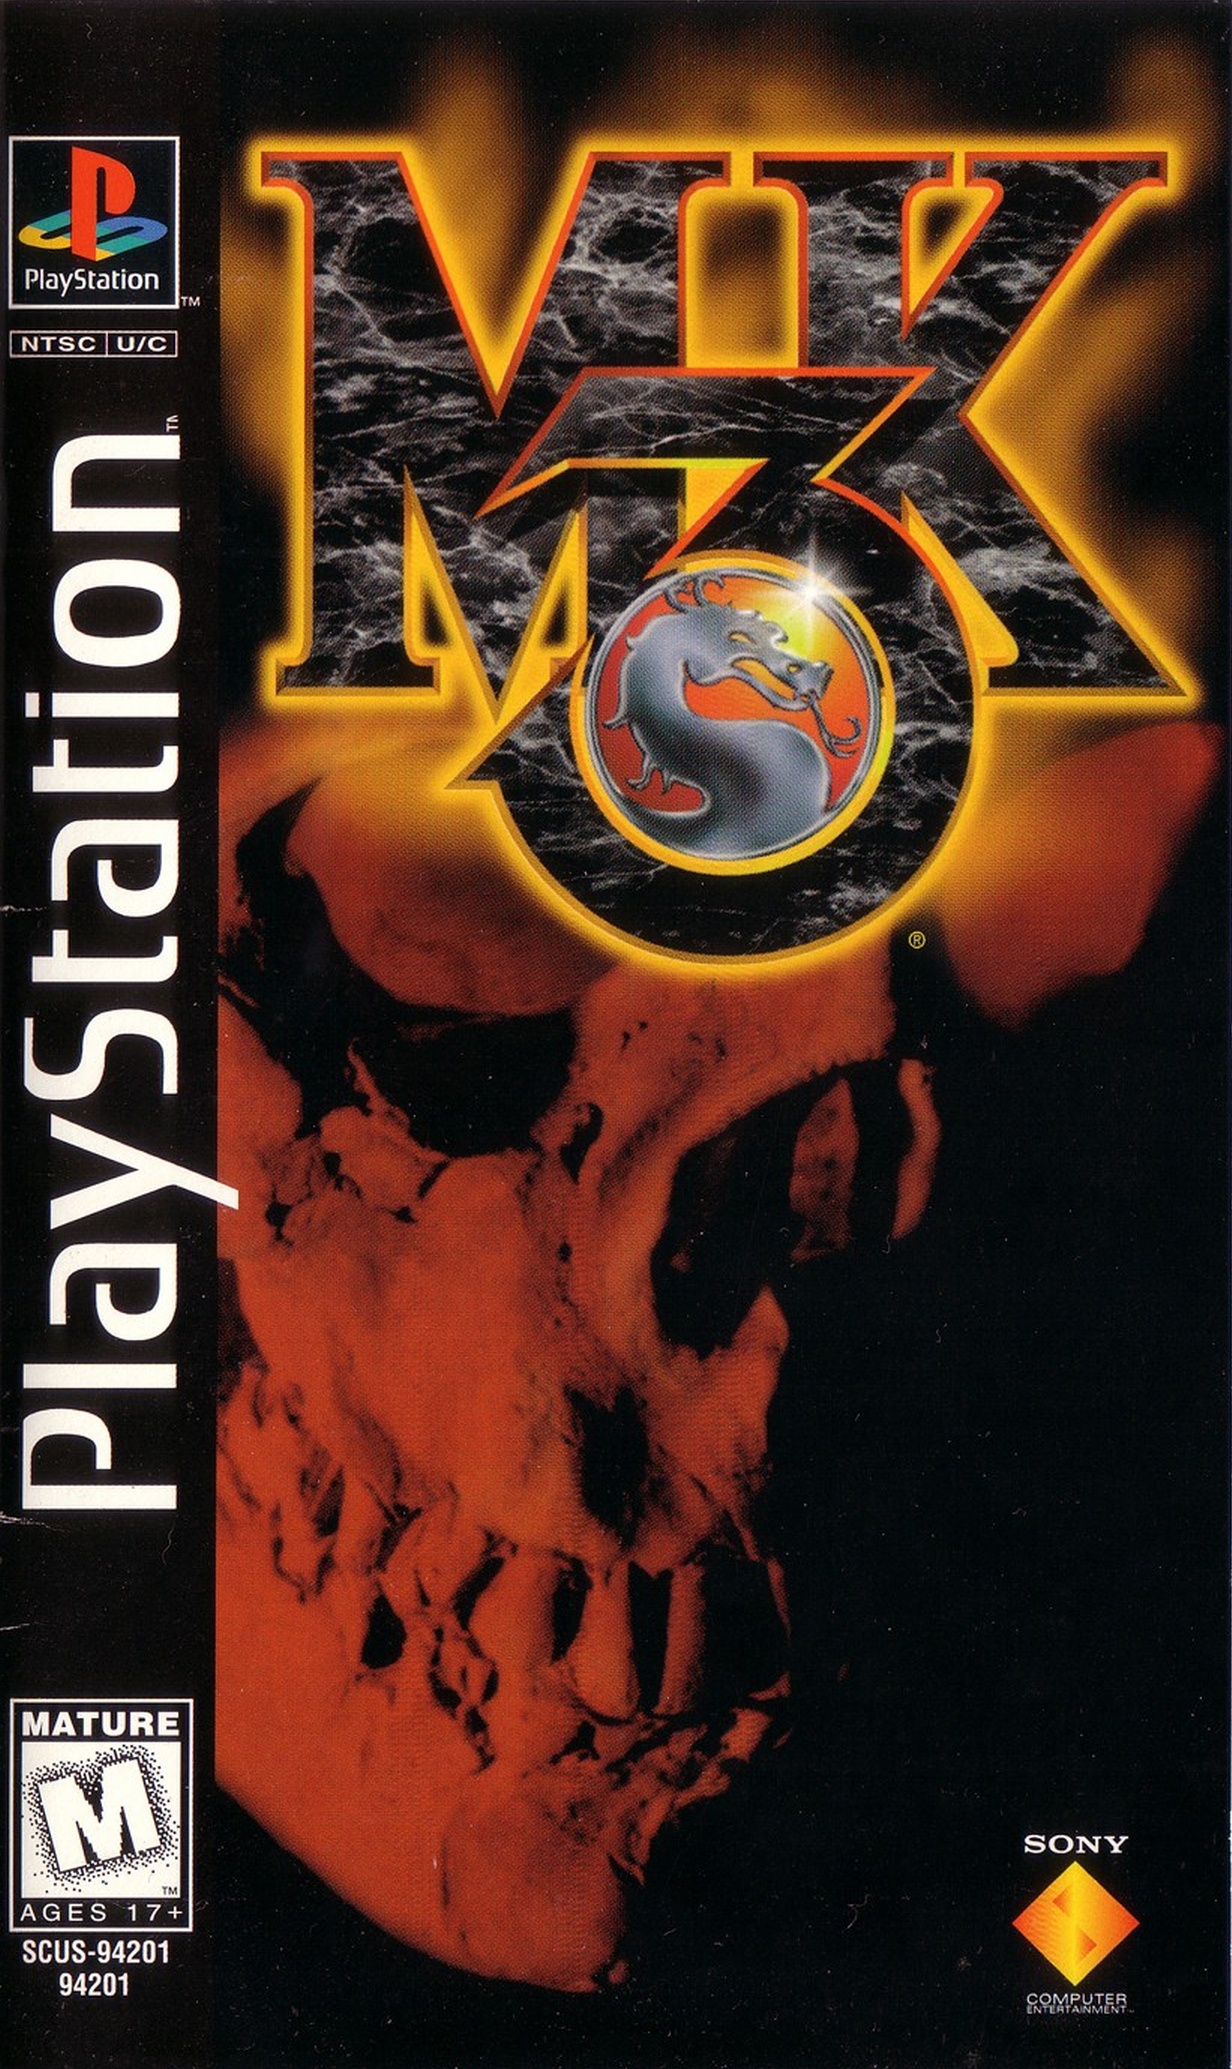 Мортал комбат сони плейстейшен 3. Mortal Kombat 3 ps1 обложка. Mortal Kombat Sony PLAYSTATION 1. Мортал комбат 3 плейстейшен 1. Мортал комбат на сони плейстейшен 3.